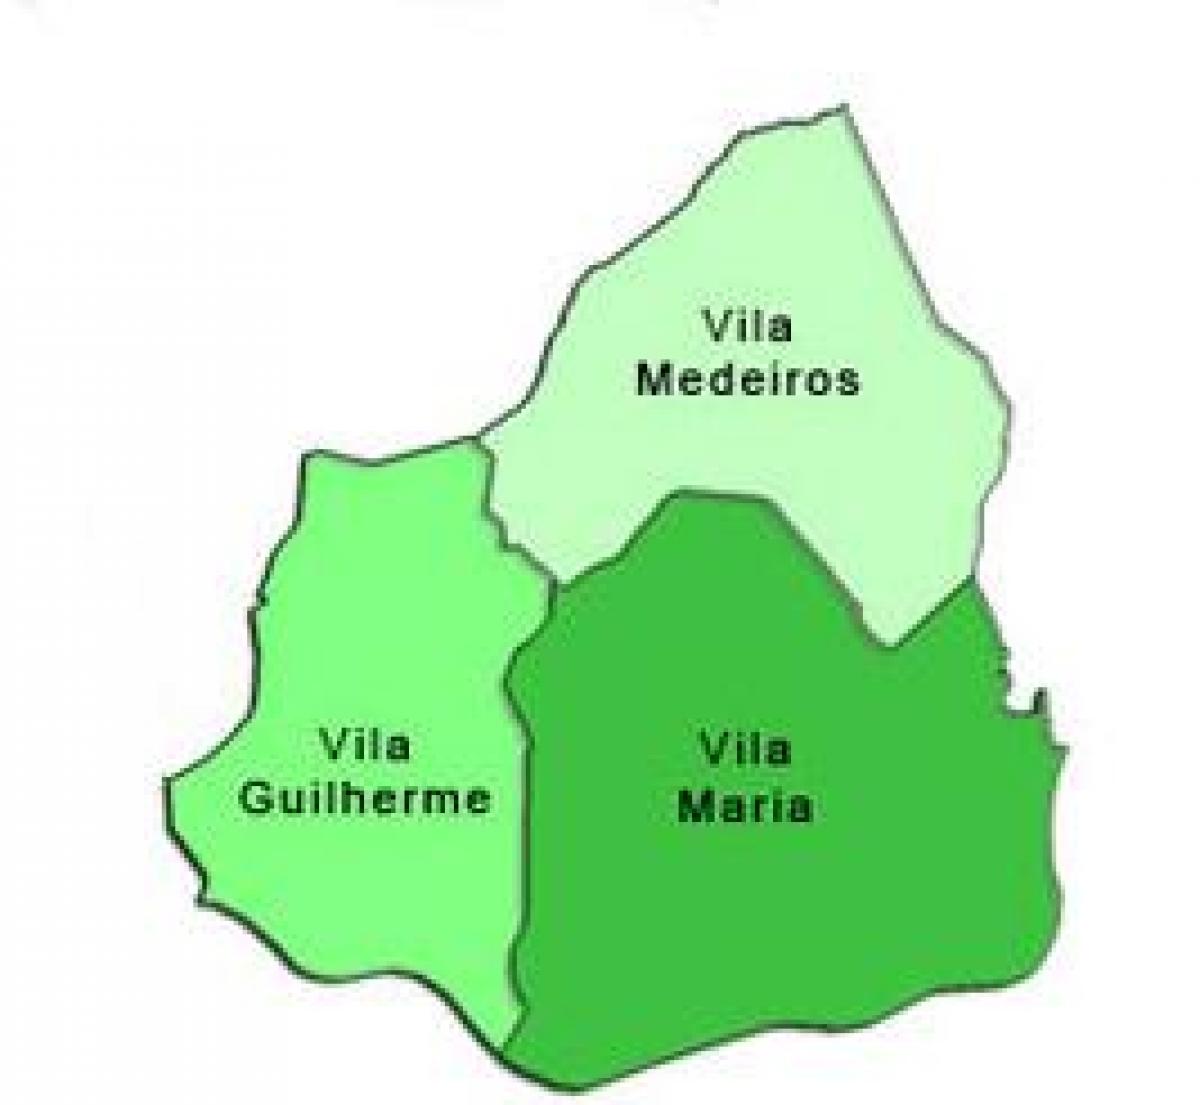 แผนที่ของ Vila มาเรียรายการย่อยขอ prefecture